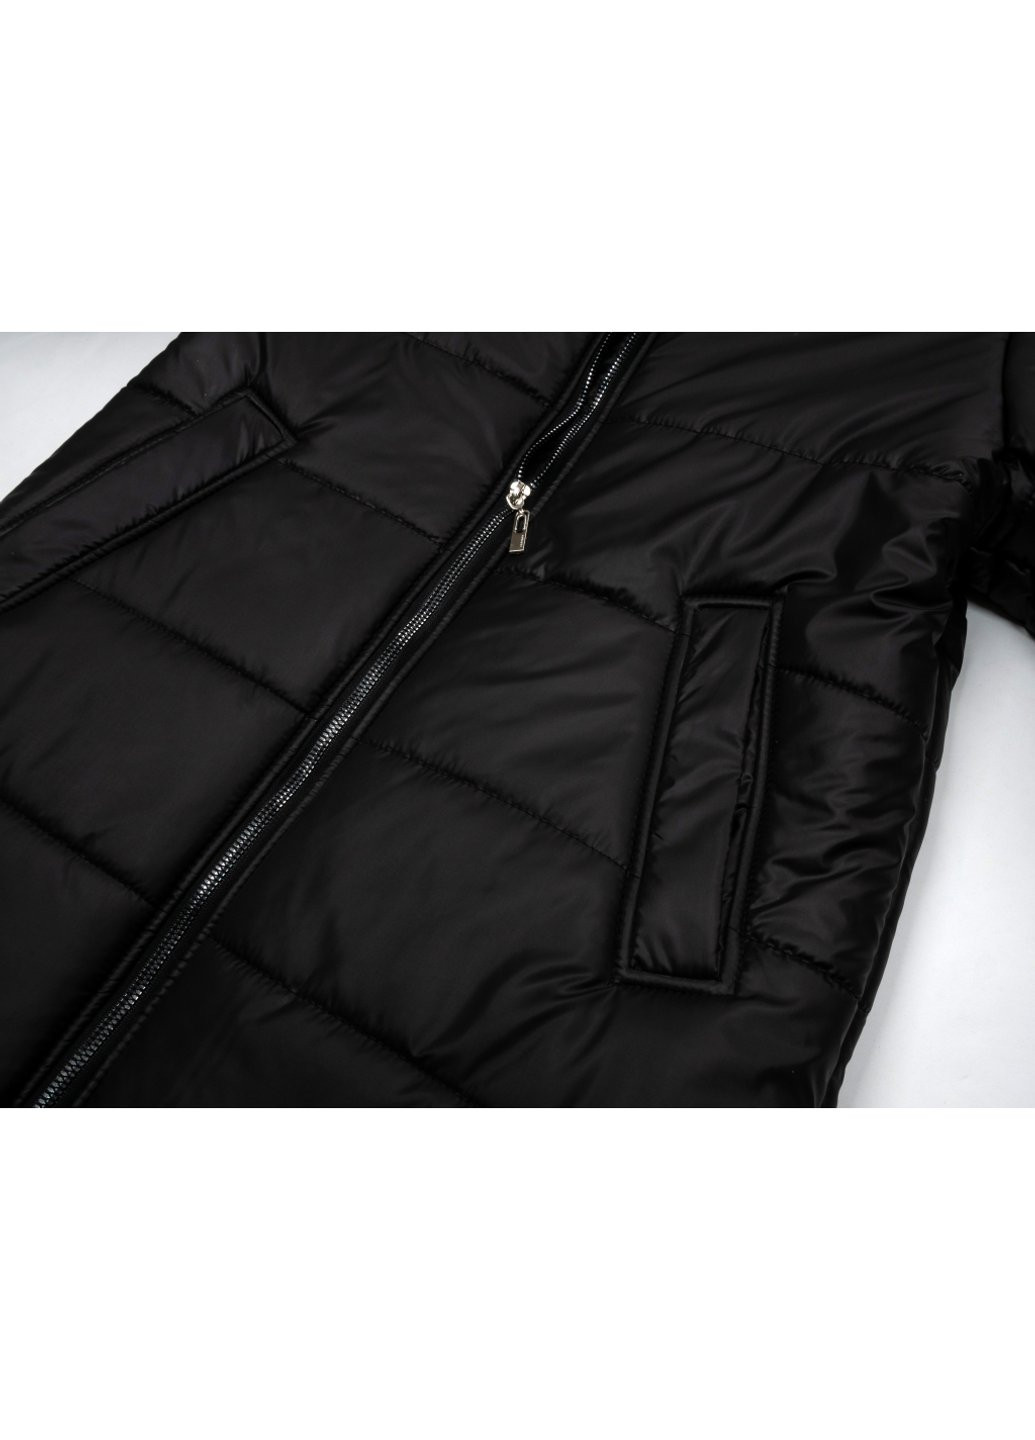 Черная демисезонная куртка пальто "donna" (21705-140g-black) Brilliant